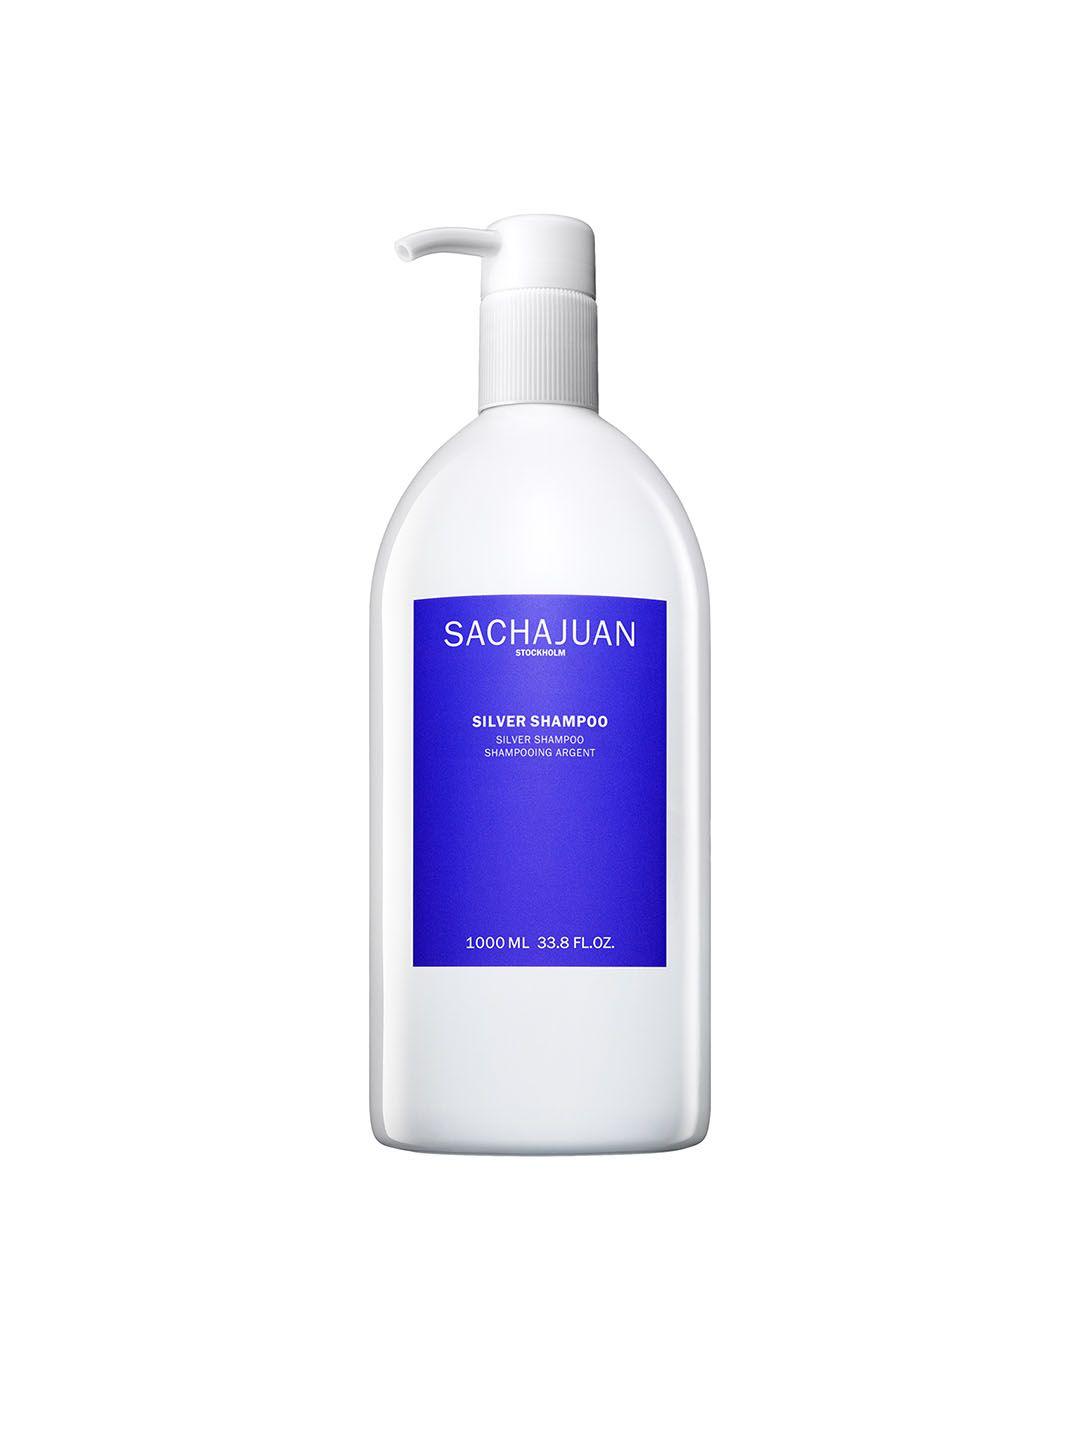 sachajuan silver shampoo for normal hair 1000ml